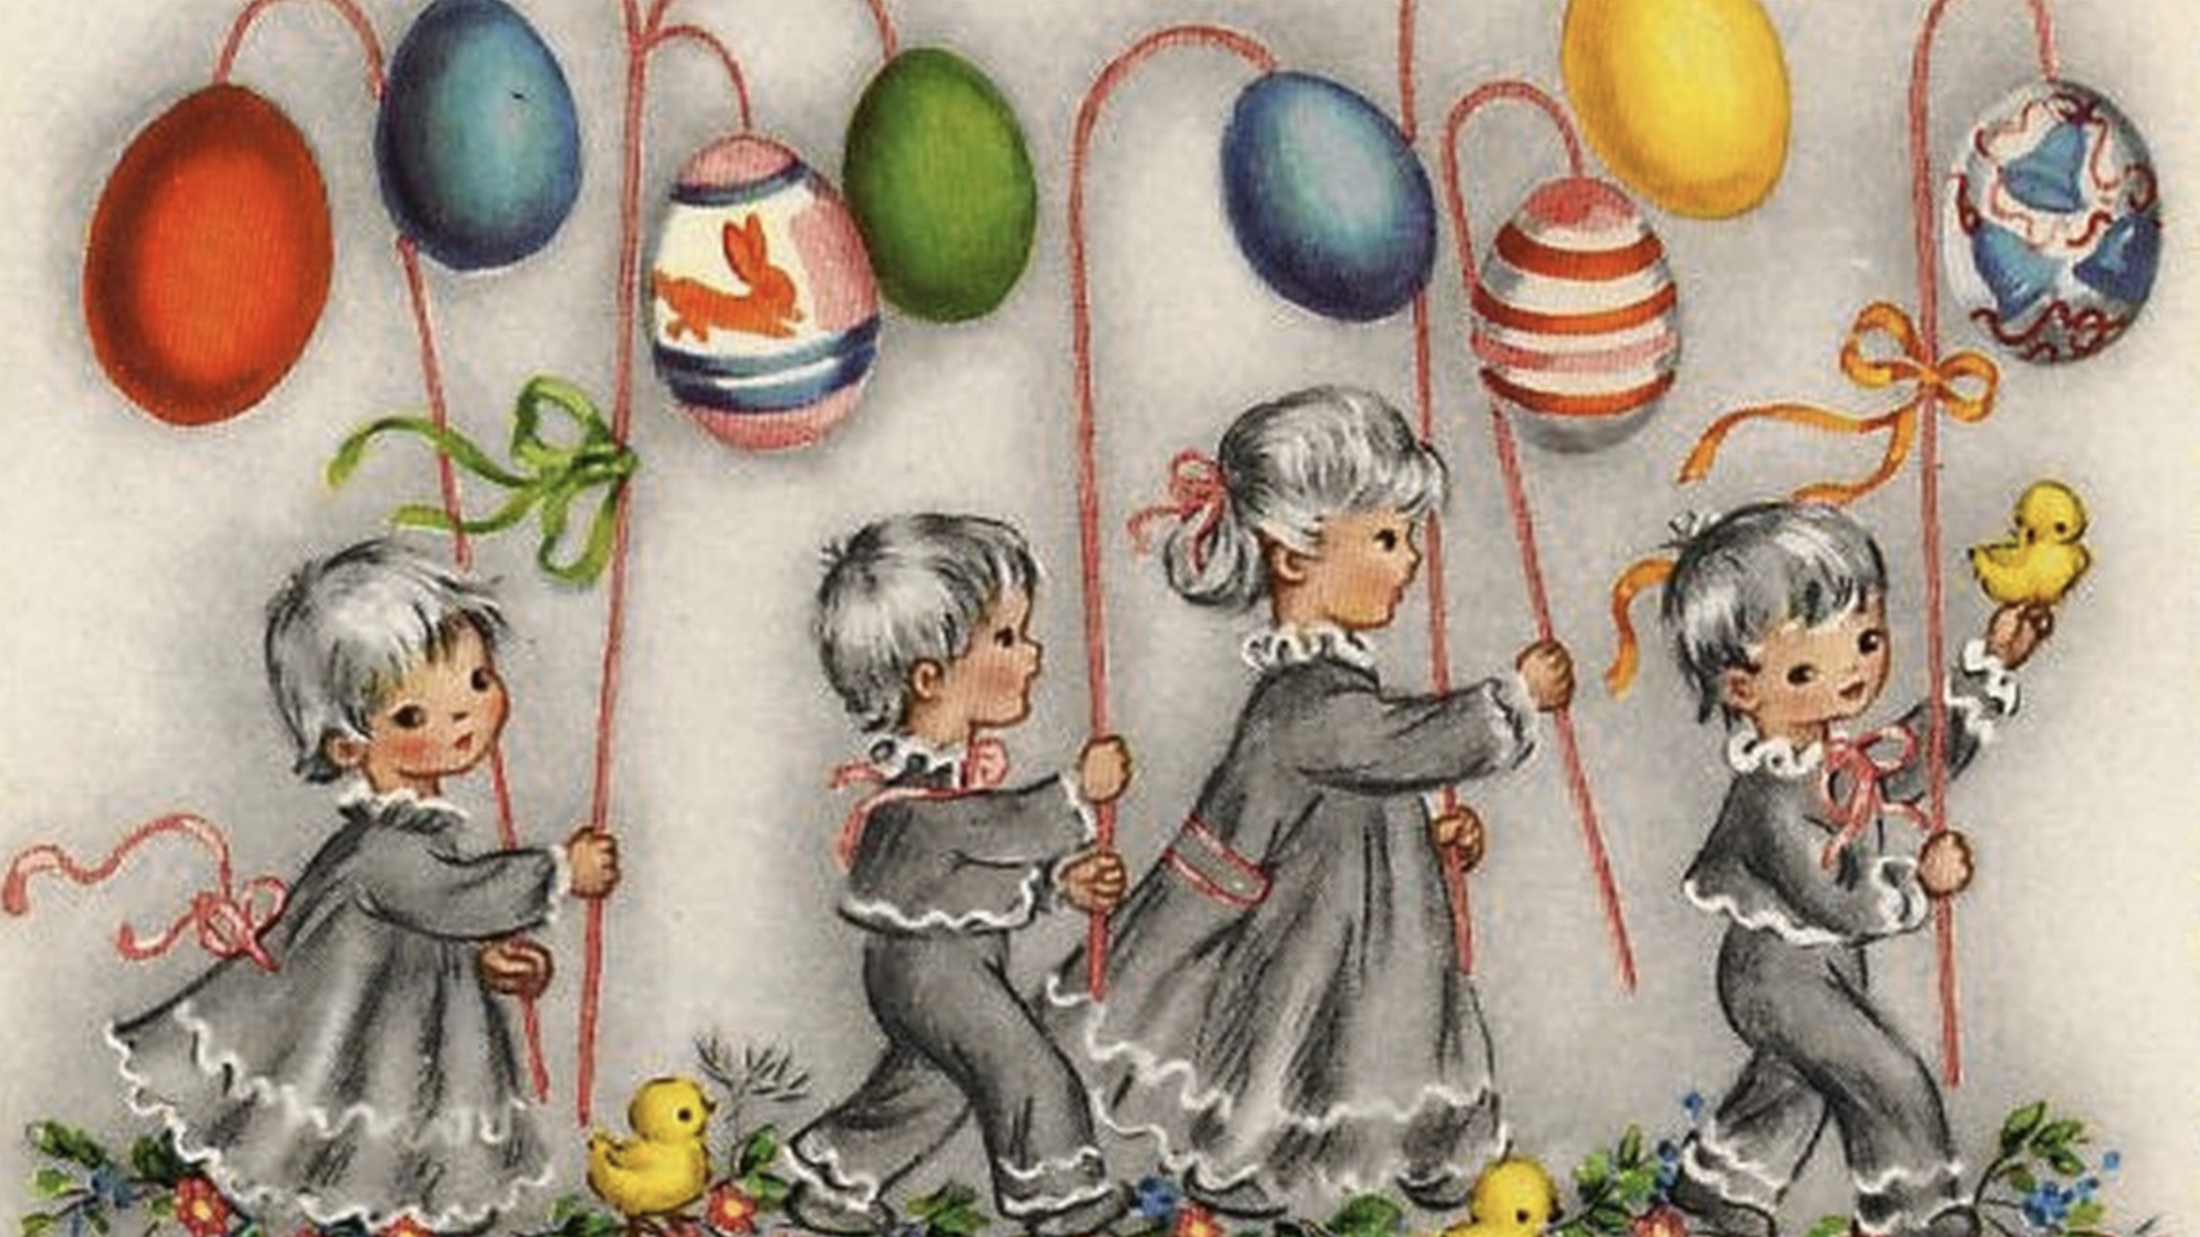 Osterkarten mit entzückenden Motiven, wie einer Kinderprozession, wurden früher gern verschickt. (Bild: Landesmuseum Kärnten)